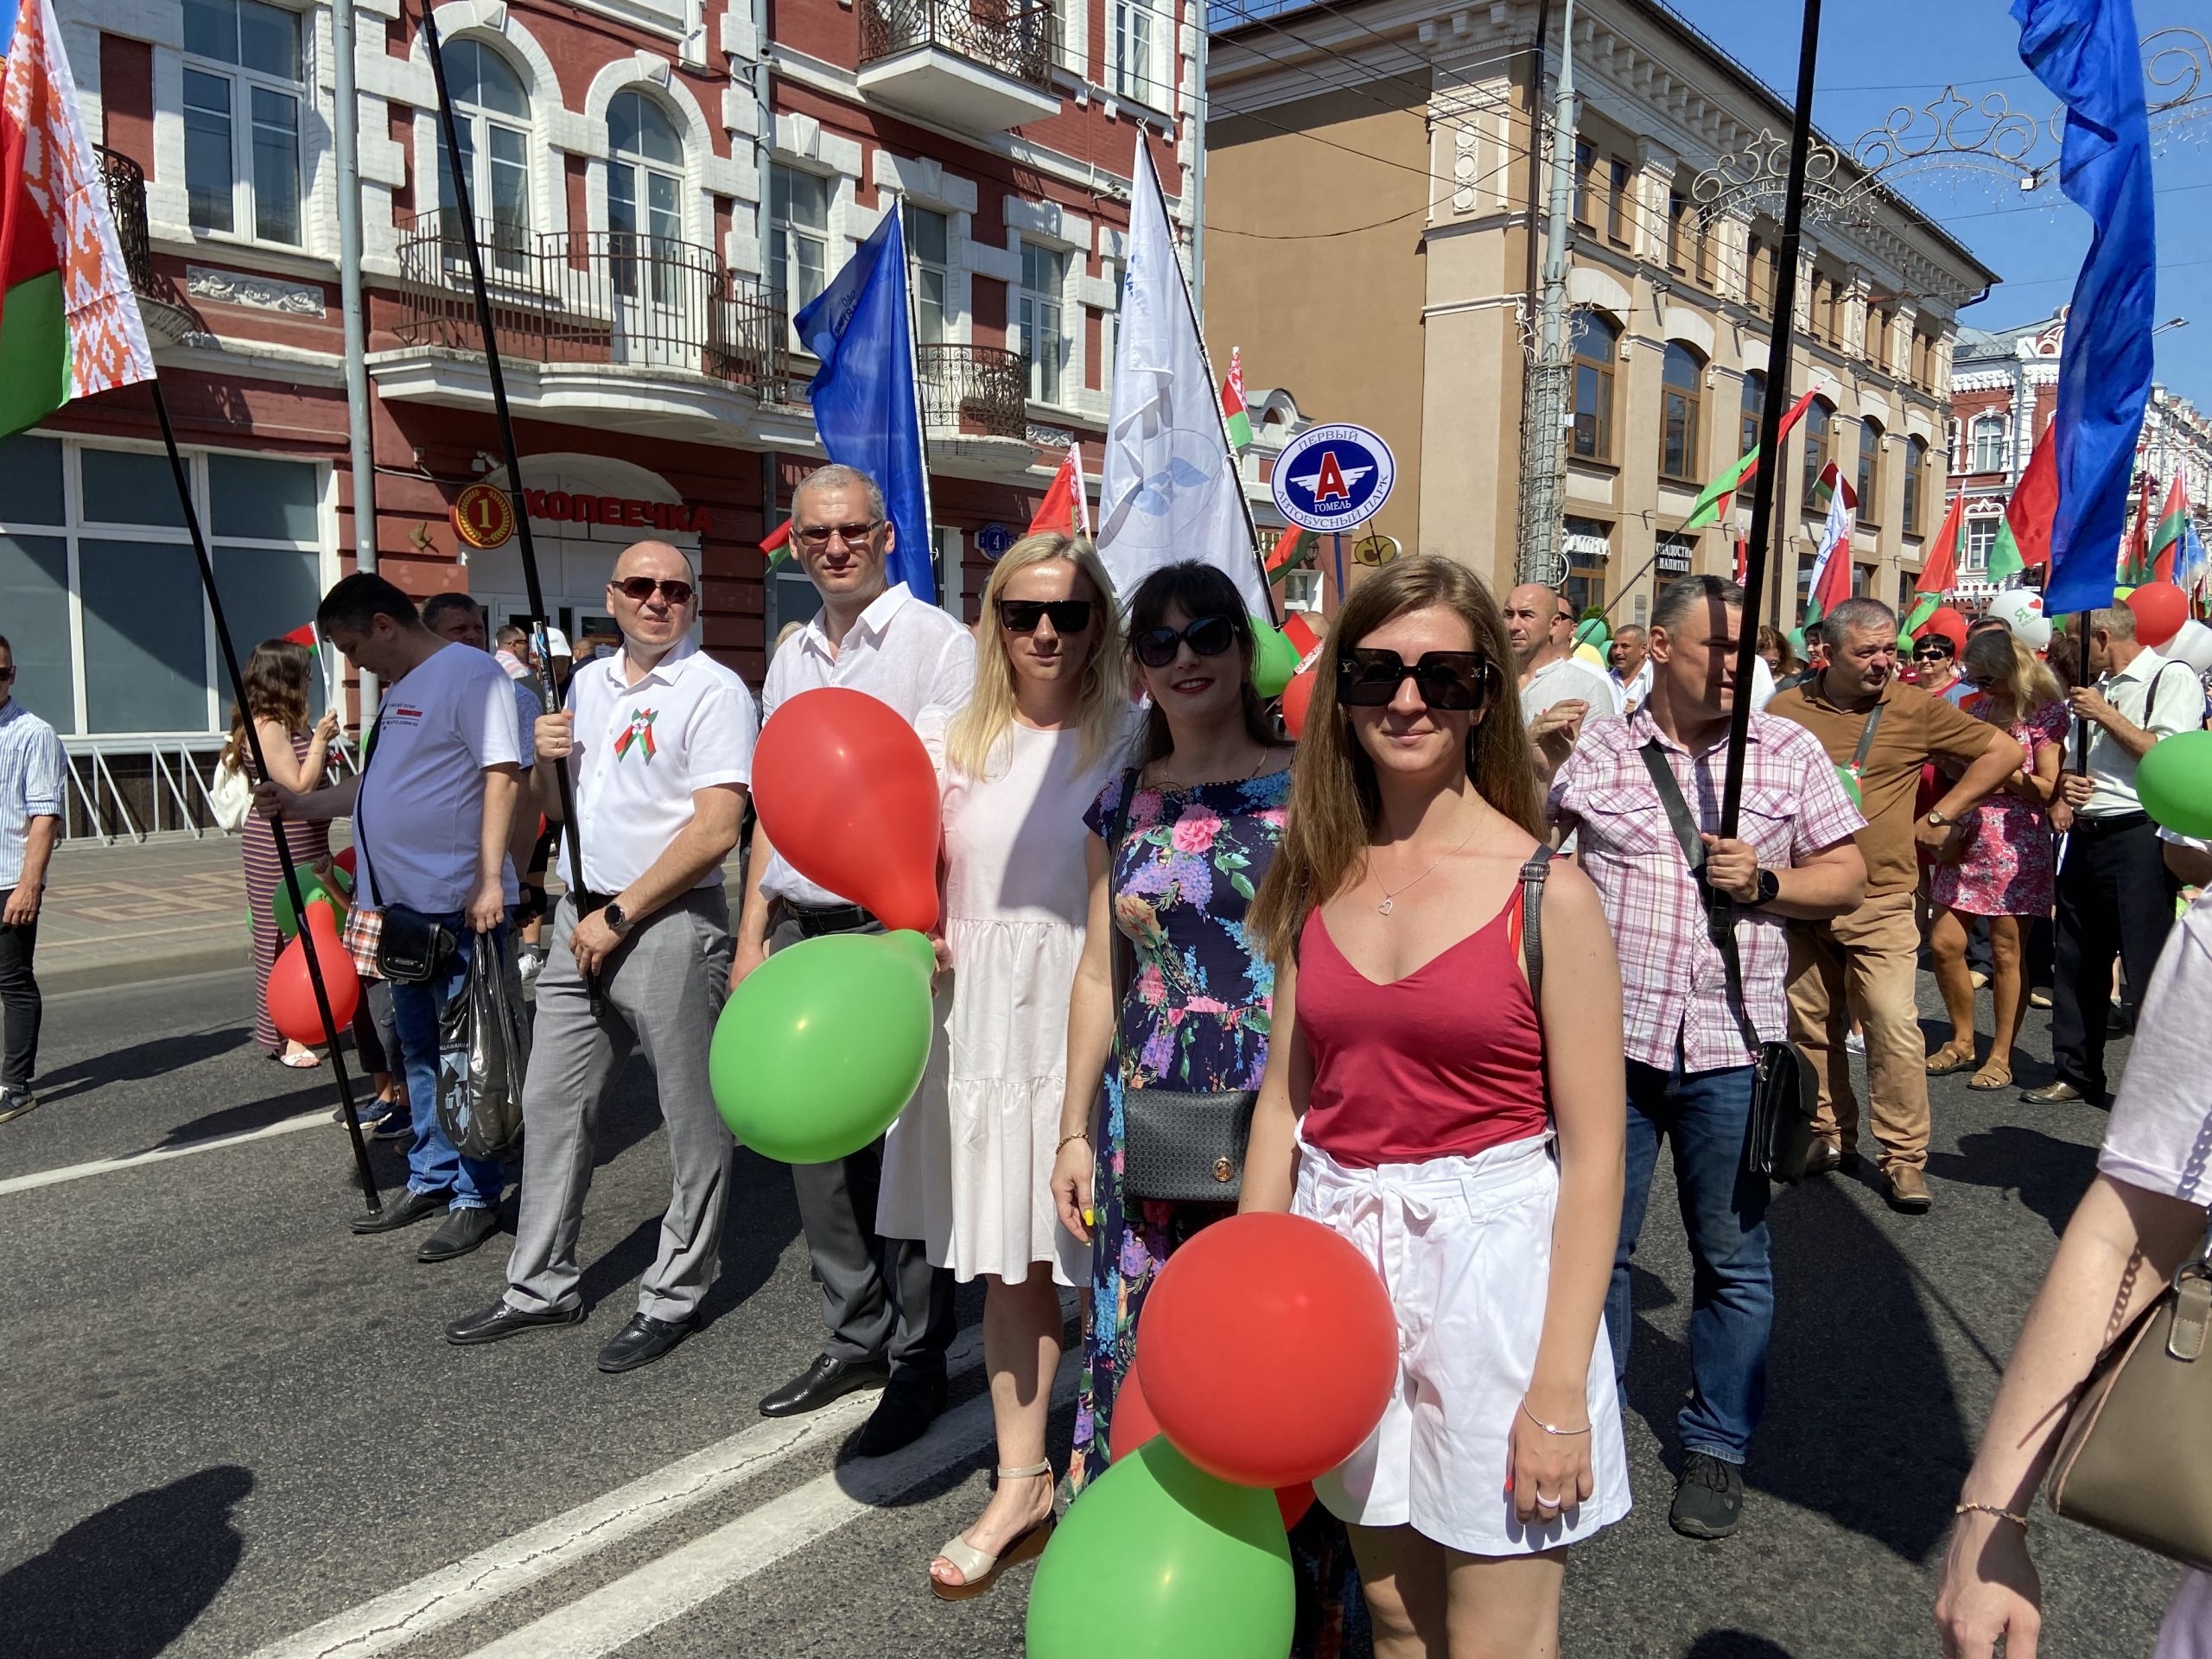 С Днём Независимости Республики Беларусь